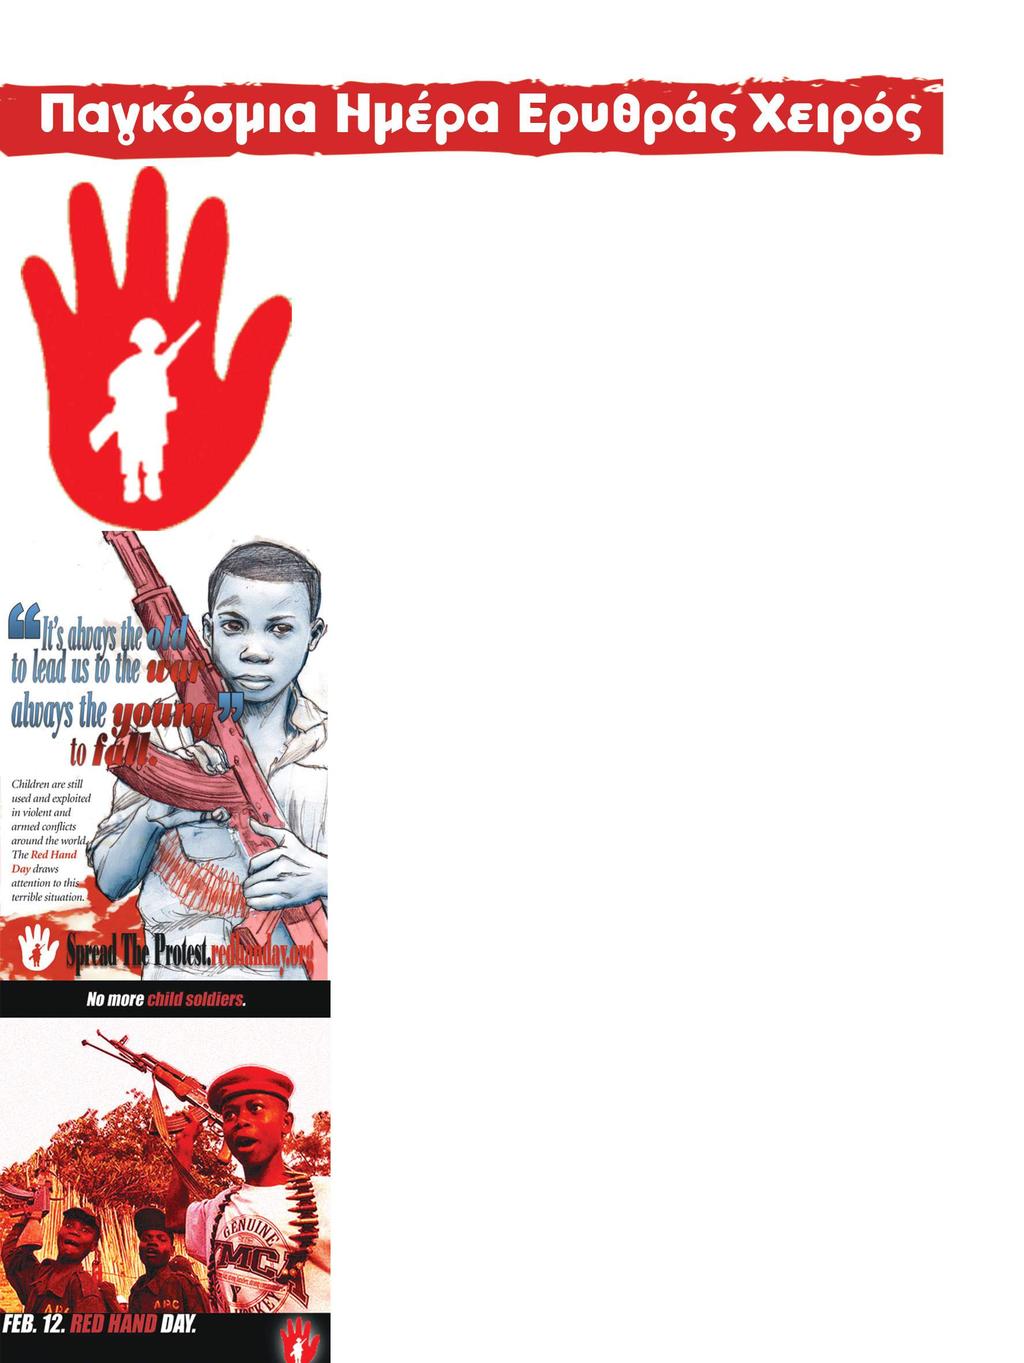 Φλεβάρης 14 EΔΟΝόπουλα H12η Φεβρουαρίου έχει καθιερωθεί ως Ημέρα της Ερυθράς Χειρός, ή Ημέρα του Κόκκινου Χεριού και είναι αφιερωμένη στα παιδιά που εμπλέκονται σε πολεμικές συρράξεις και καθιερώθηκε